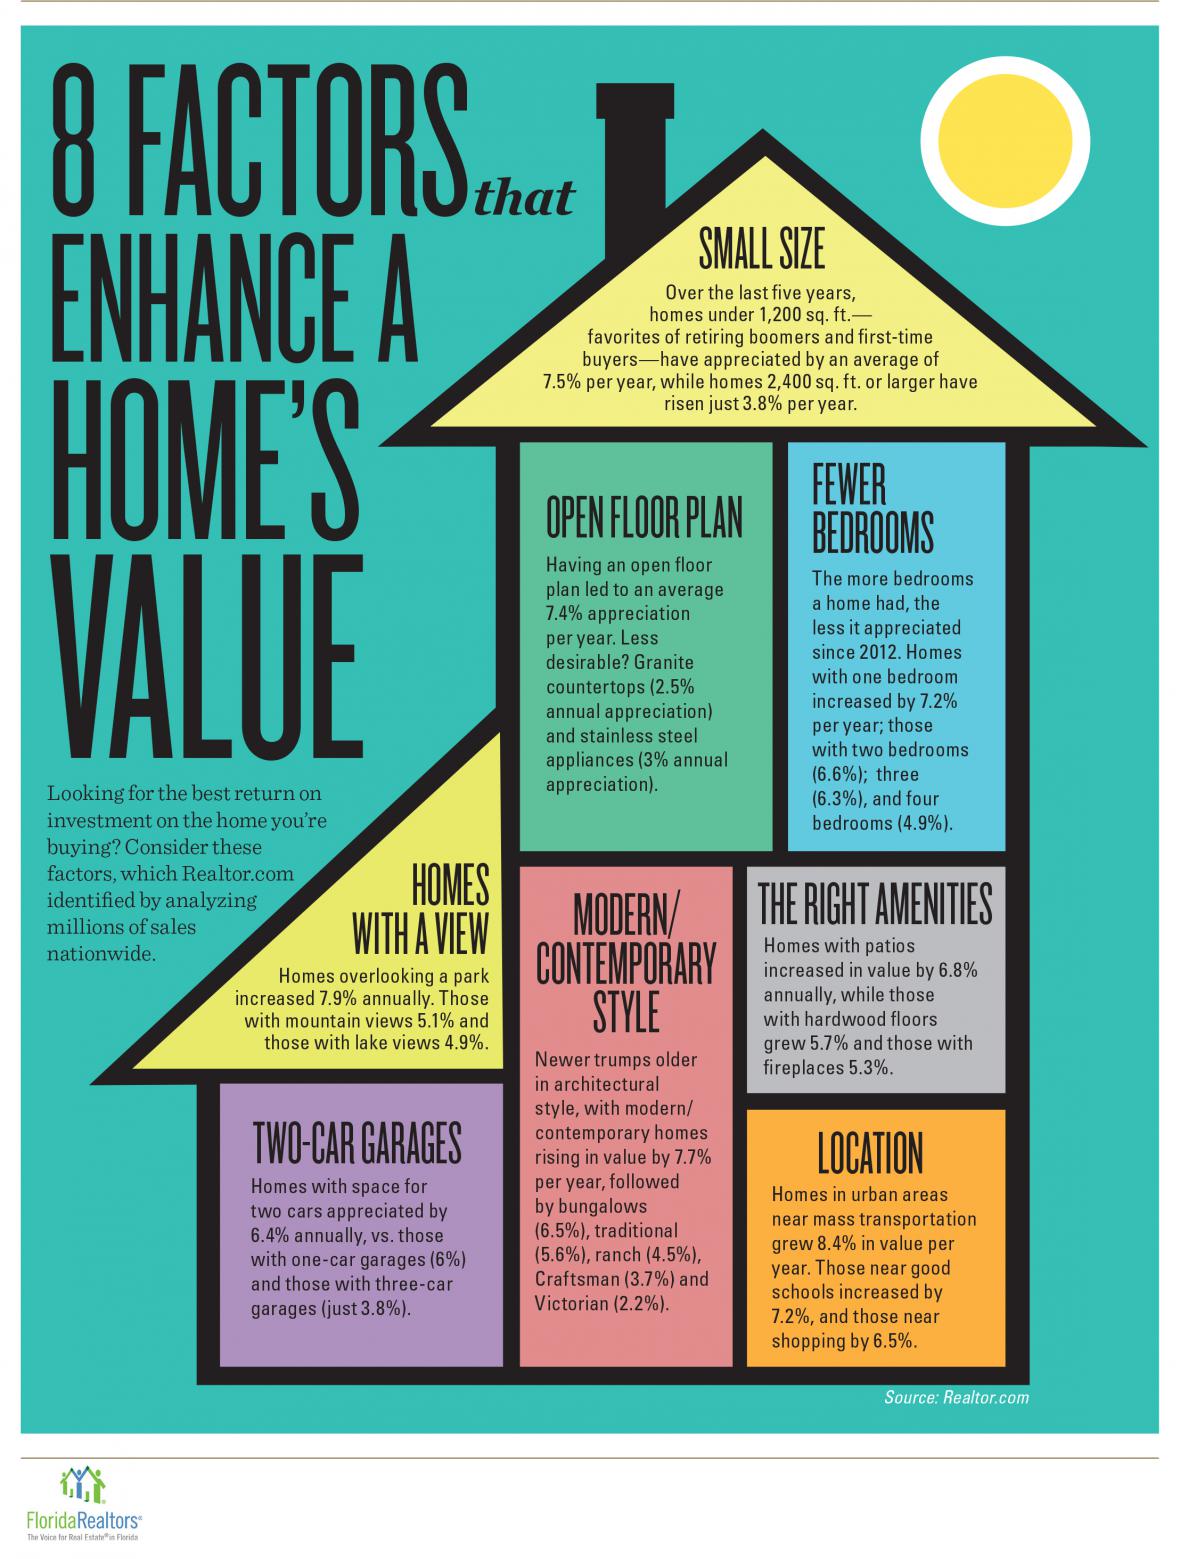 8 FACTORS ENHANCE A HOME’S VALUE